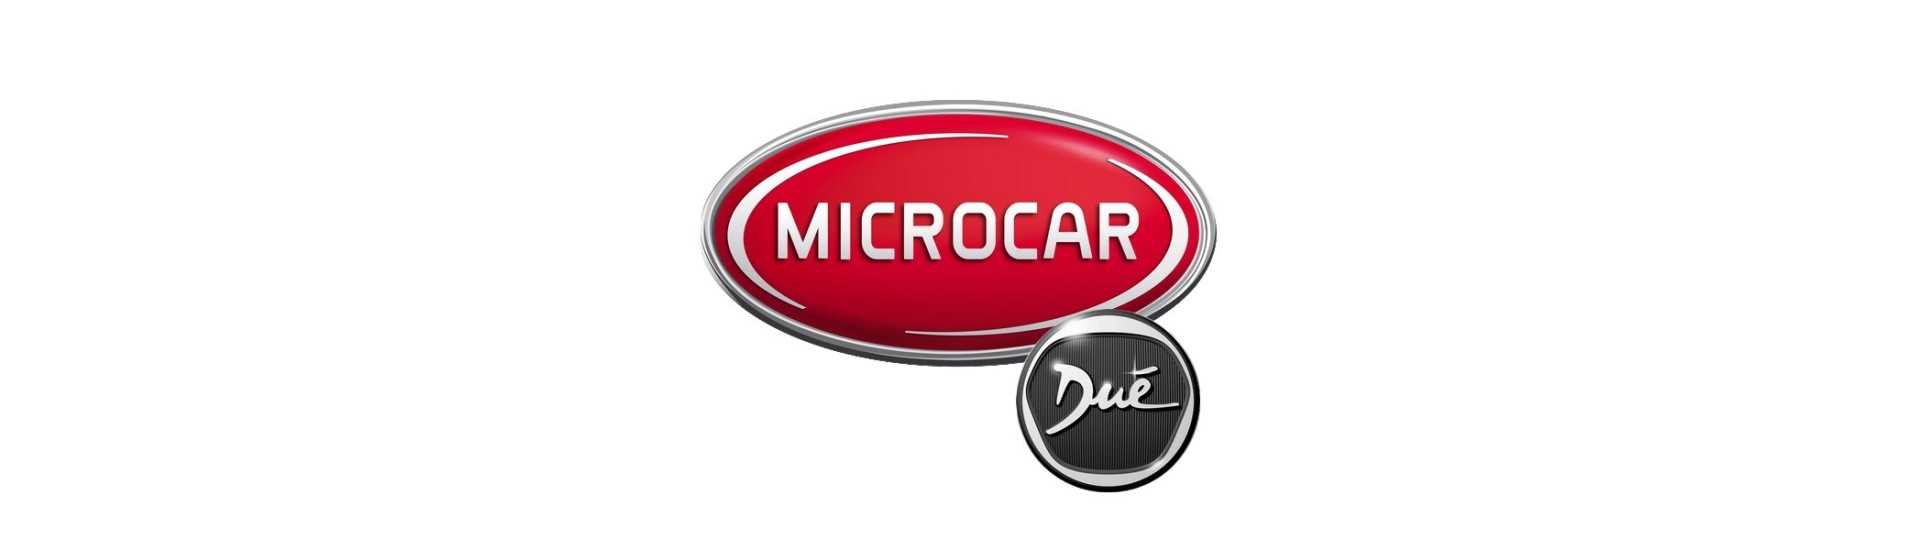 vidrio alto al mejor precio para coche sin permiso Microcar Dué